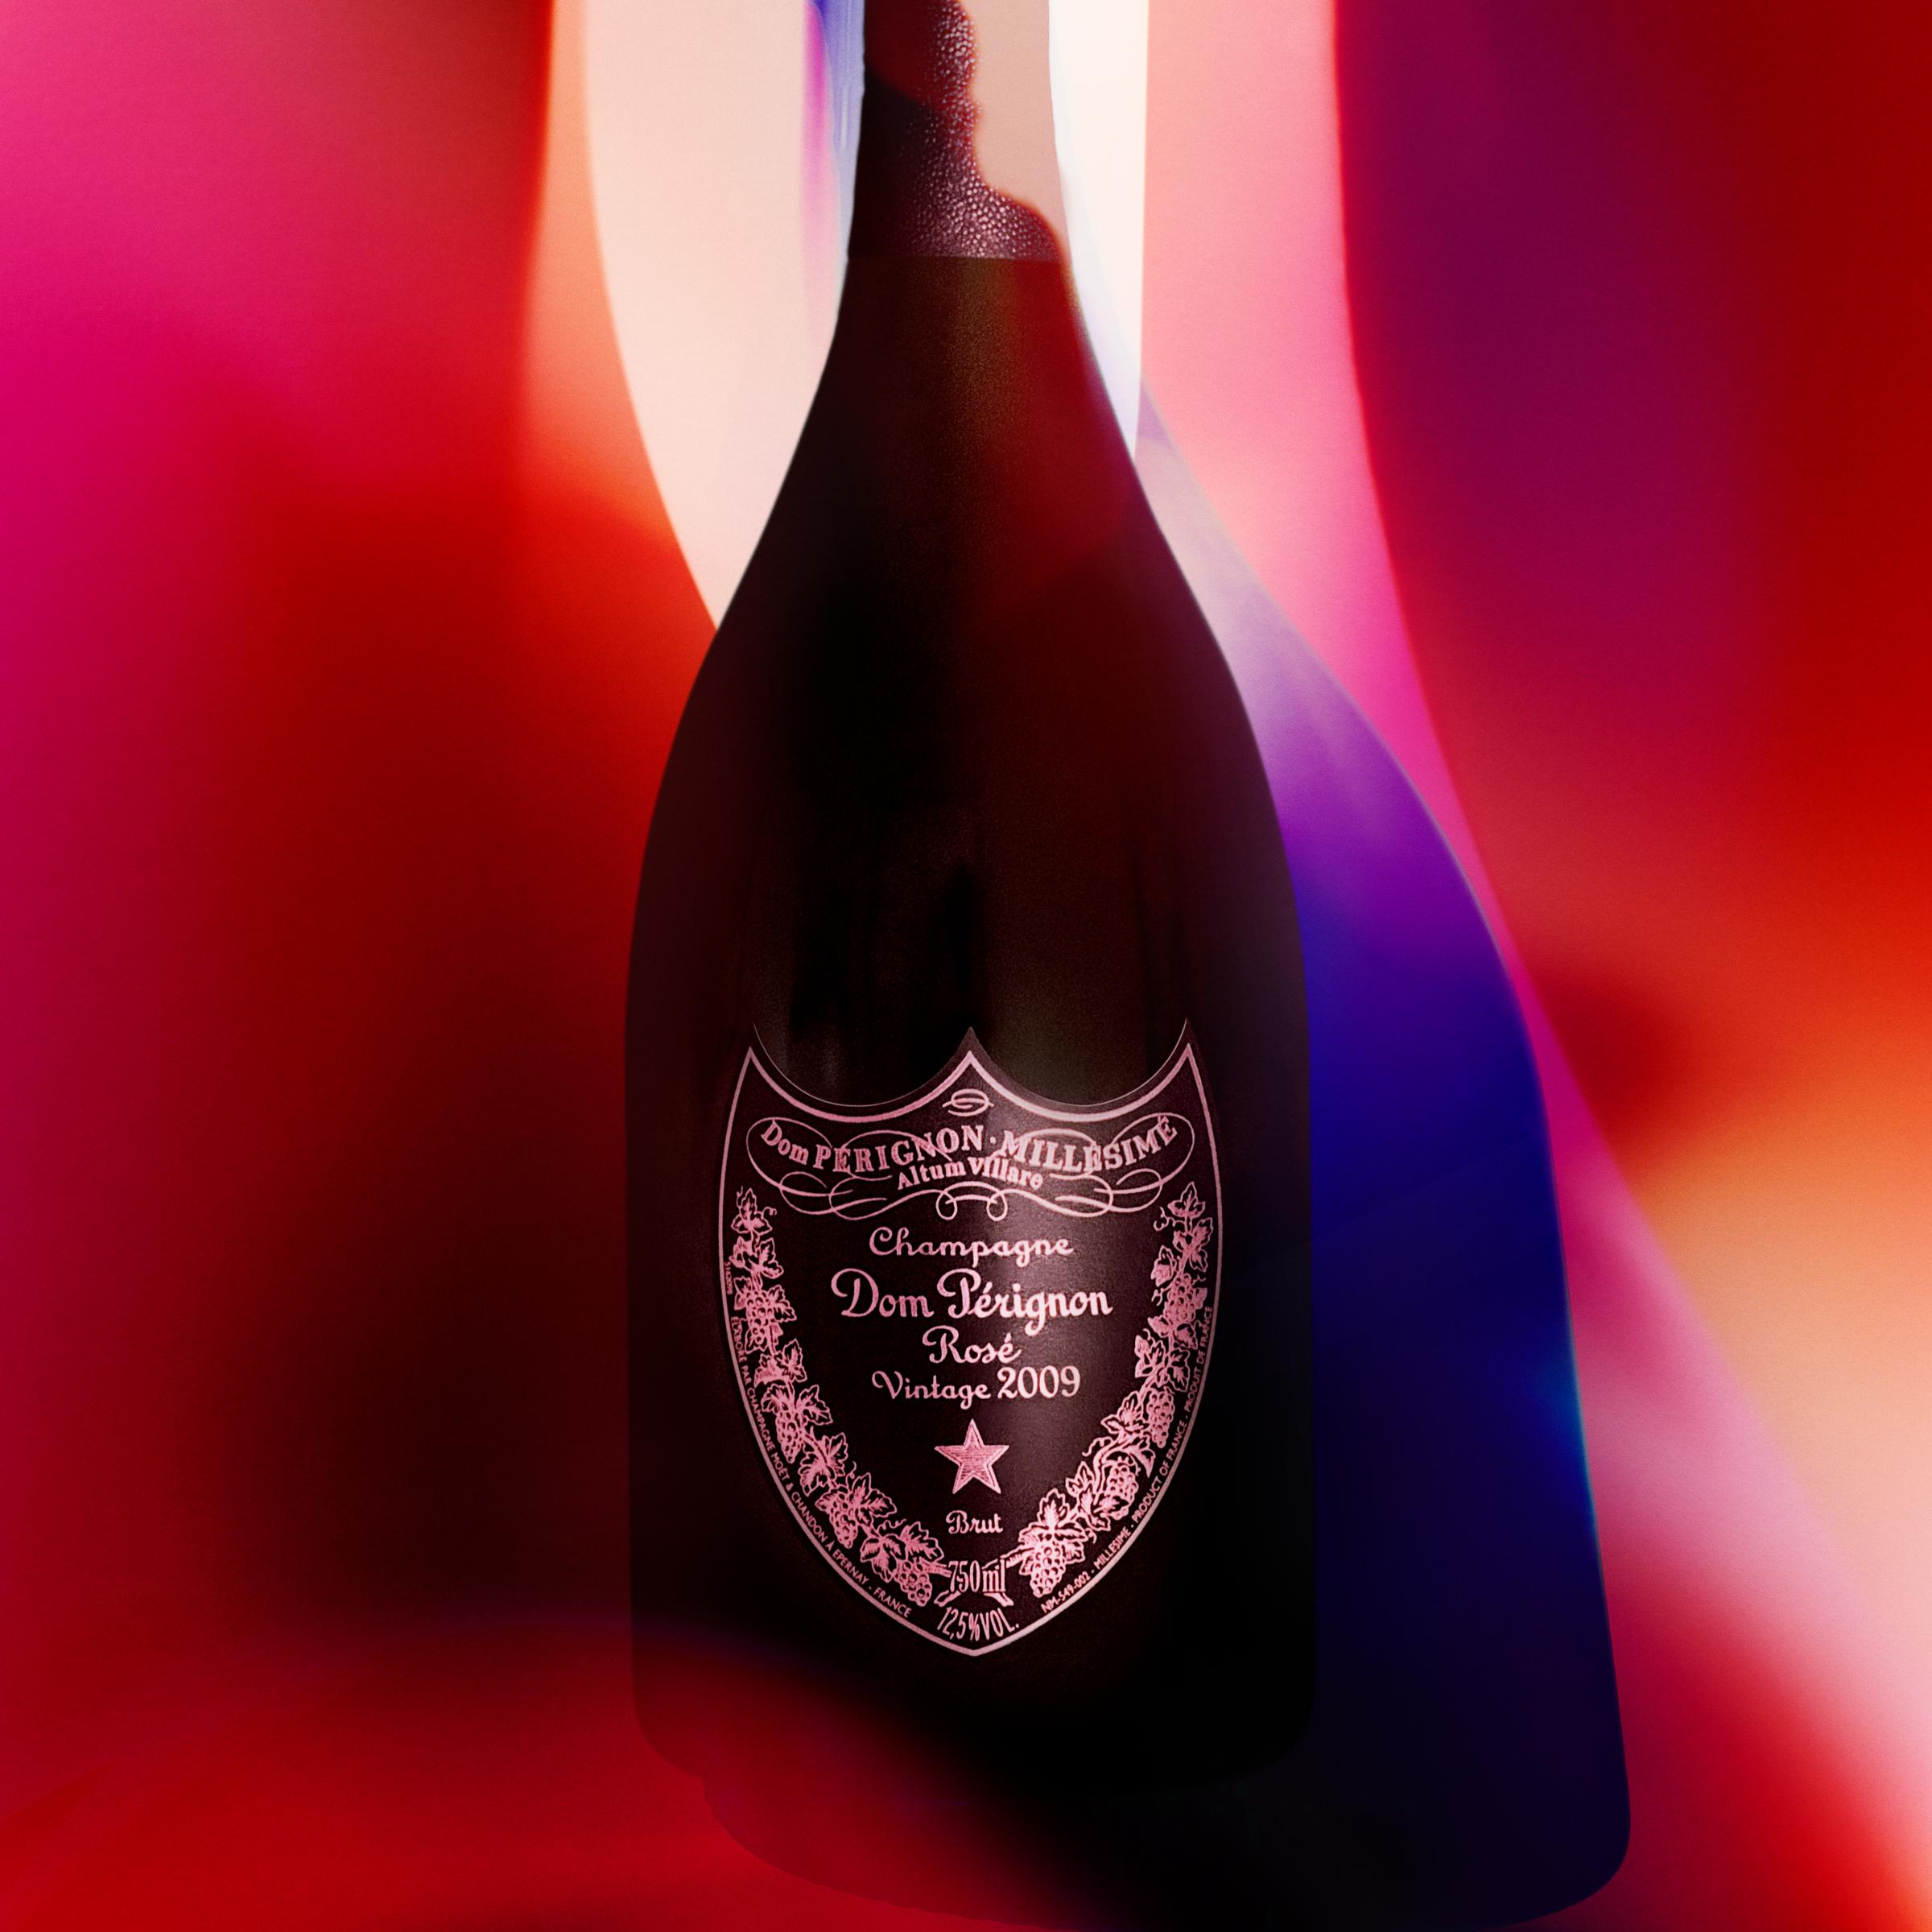 Champagne Rosé 2009 - The embodiment of fruit - Dom Pérignon